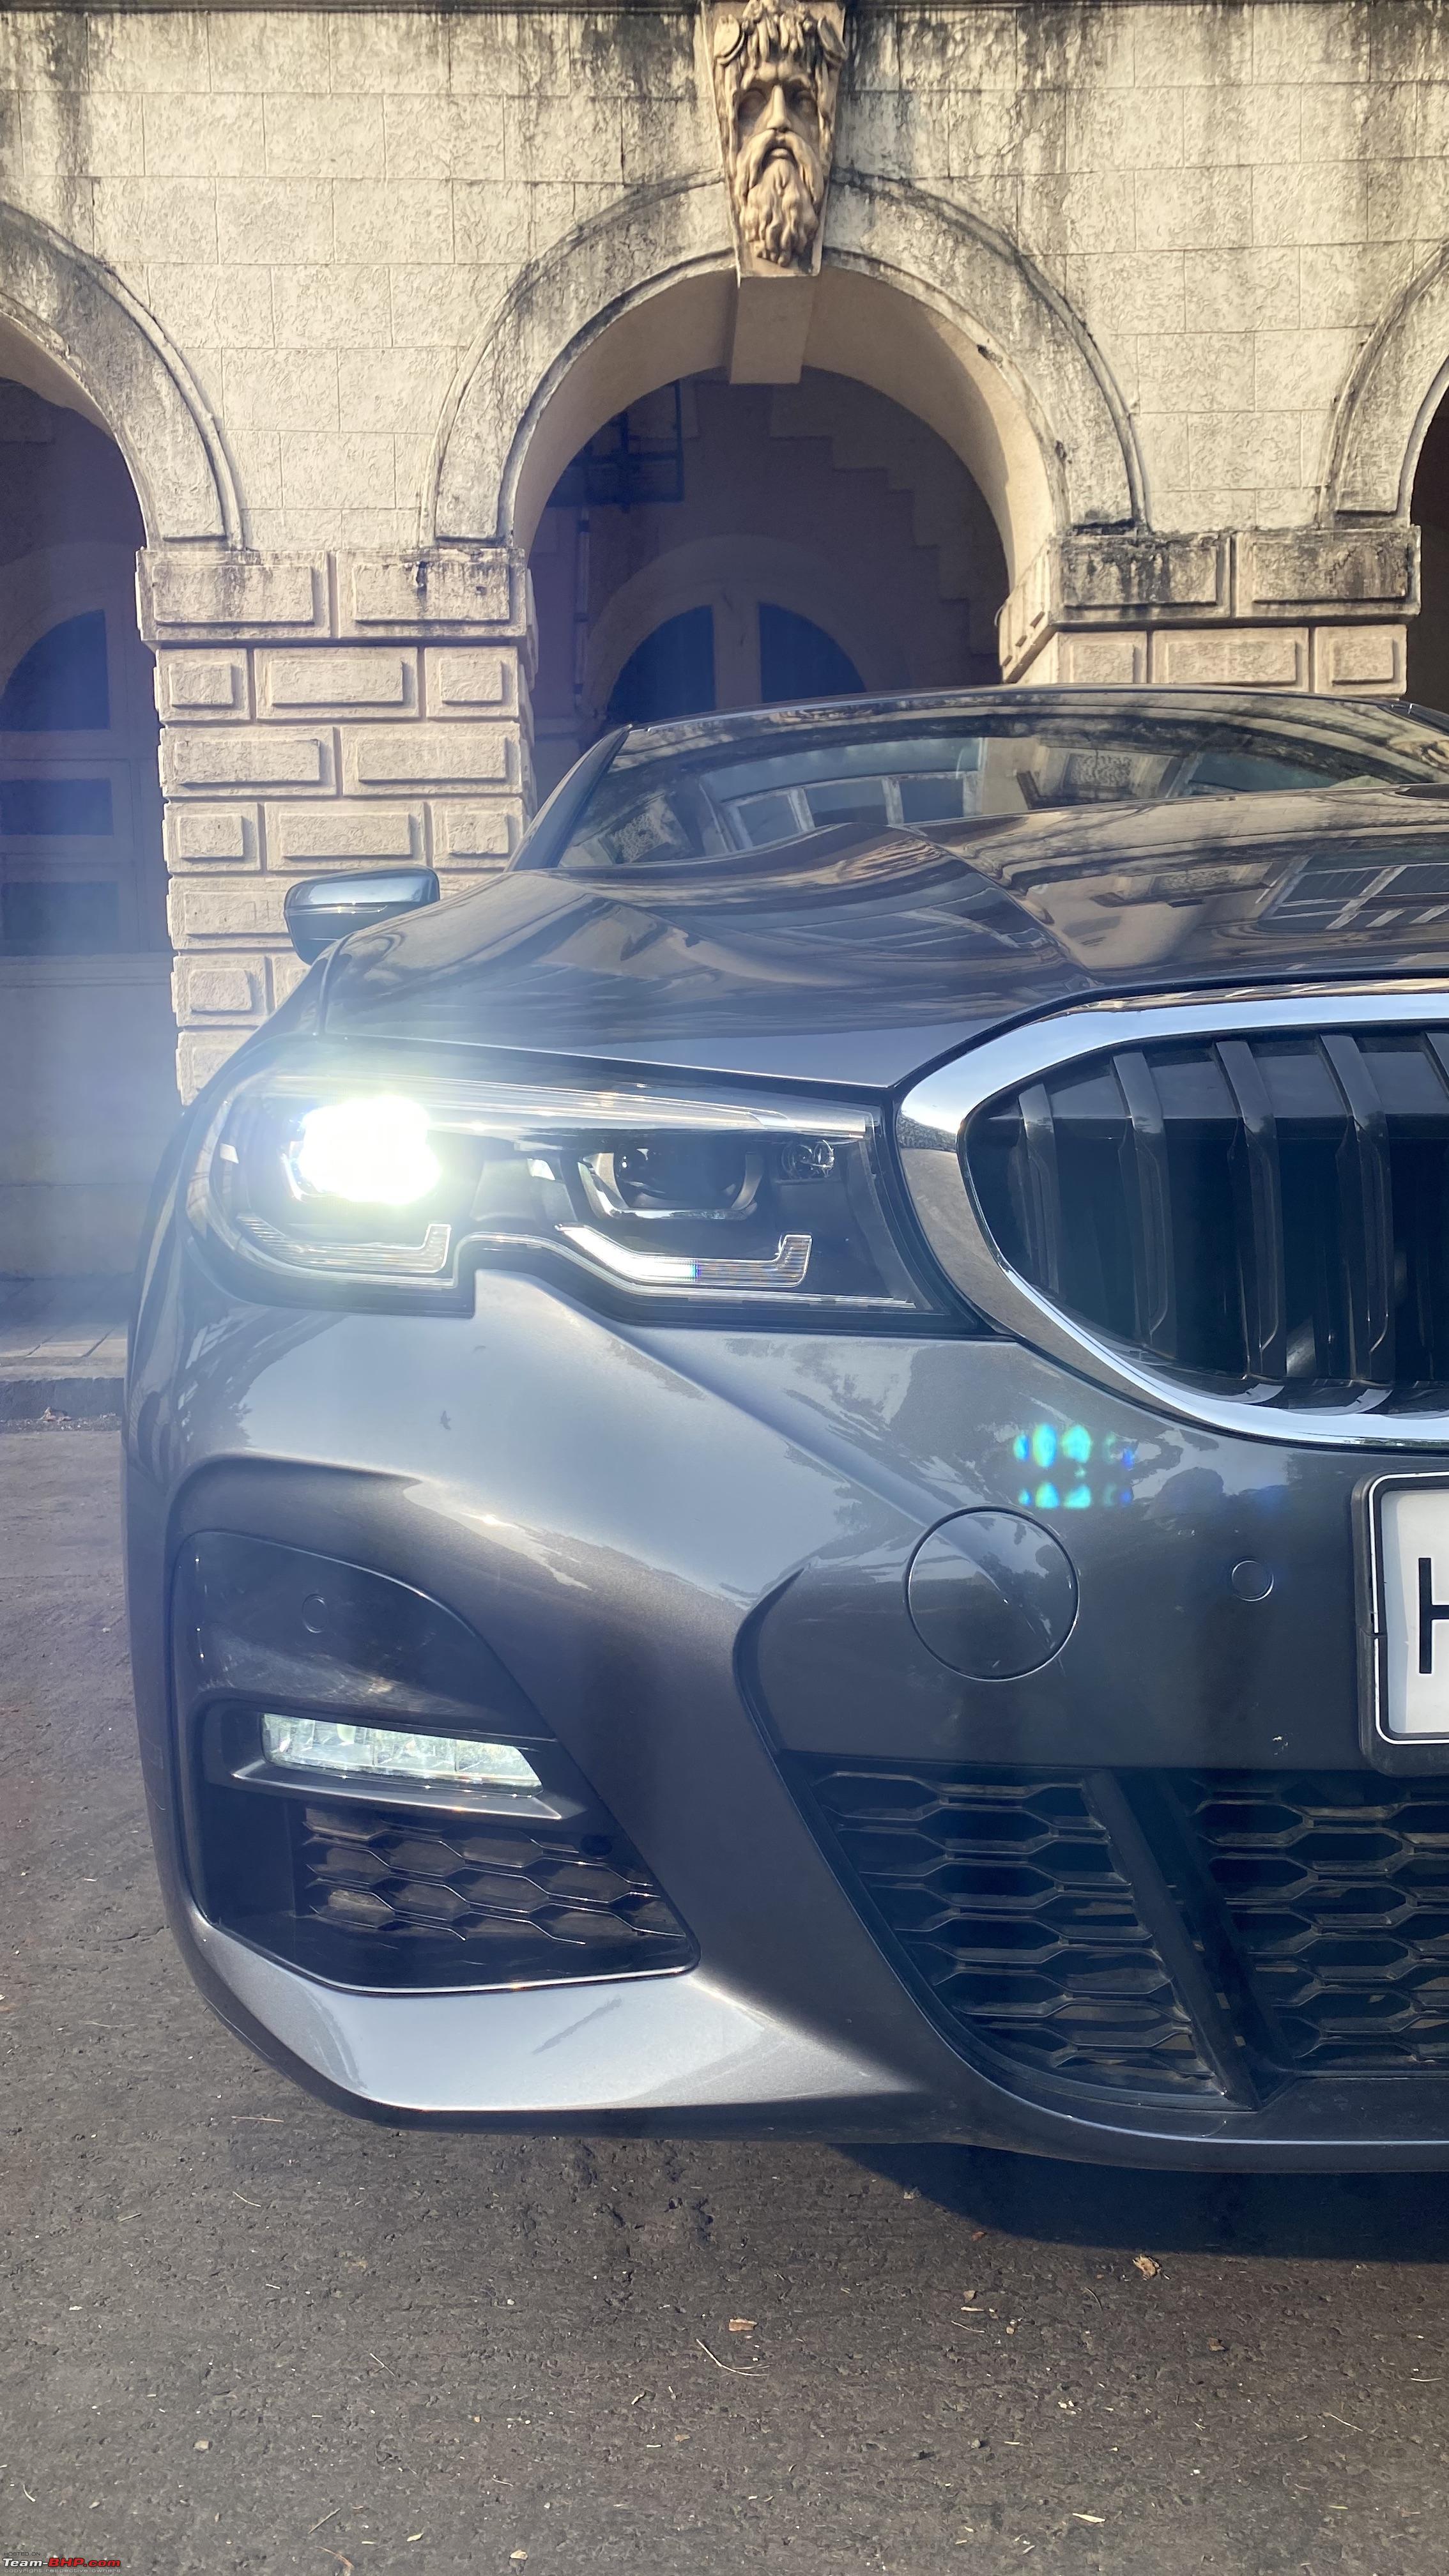 Review: BMW 330i (G20) - Team-BHP